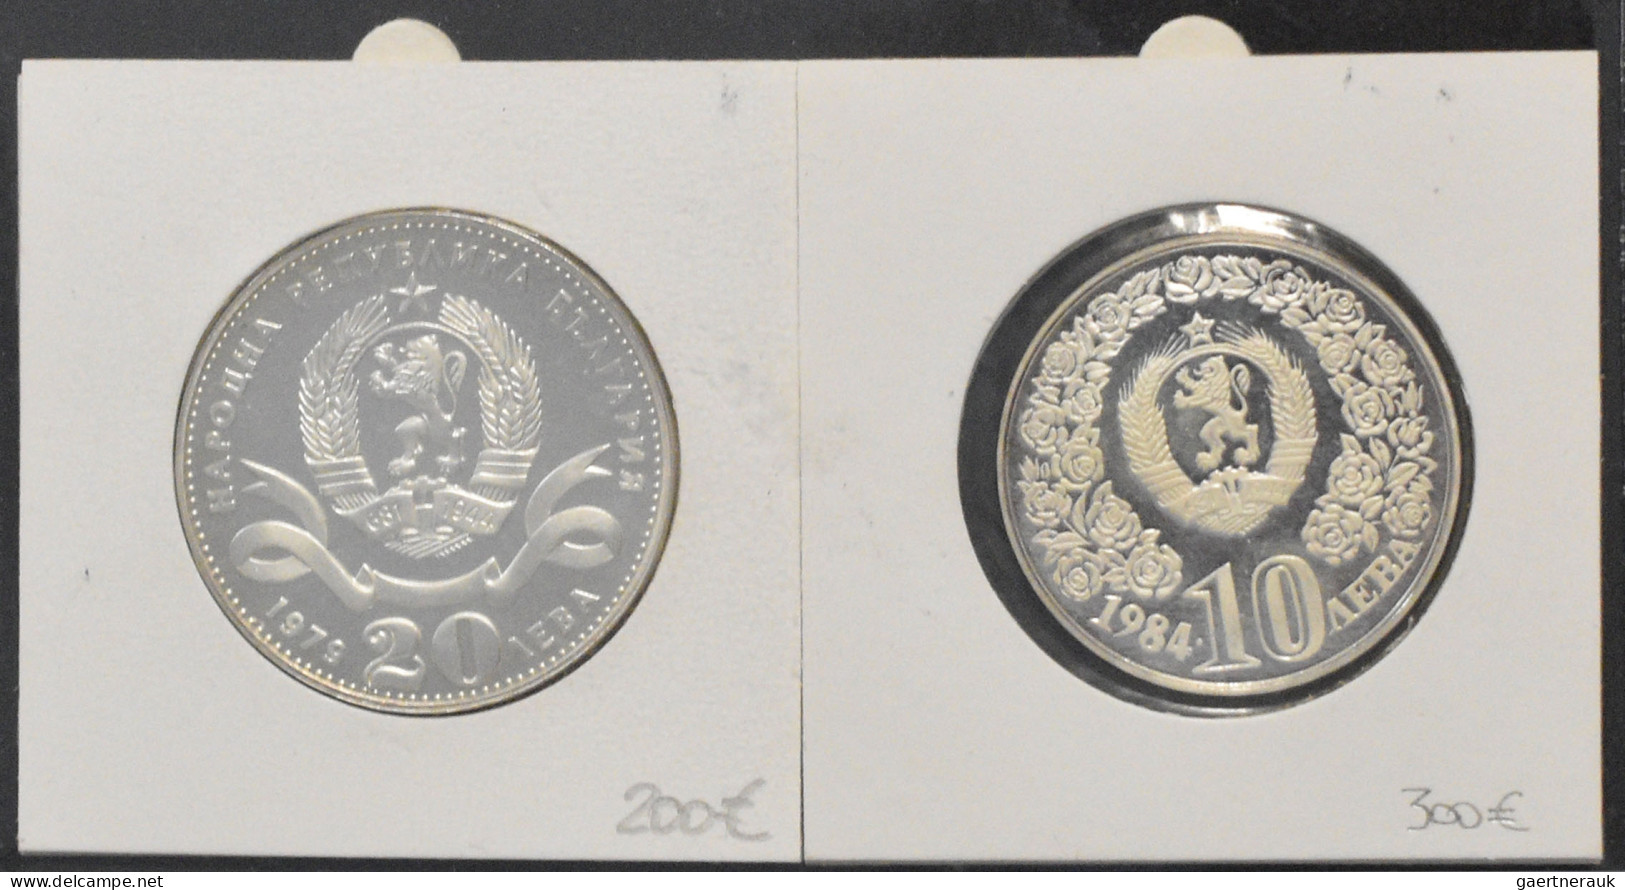 Bulgarien: Album mit 58 Münzen aus Bulgarien. Angefangen mit 1 Lev 1894 oder 5 L